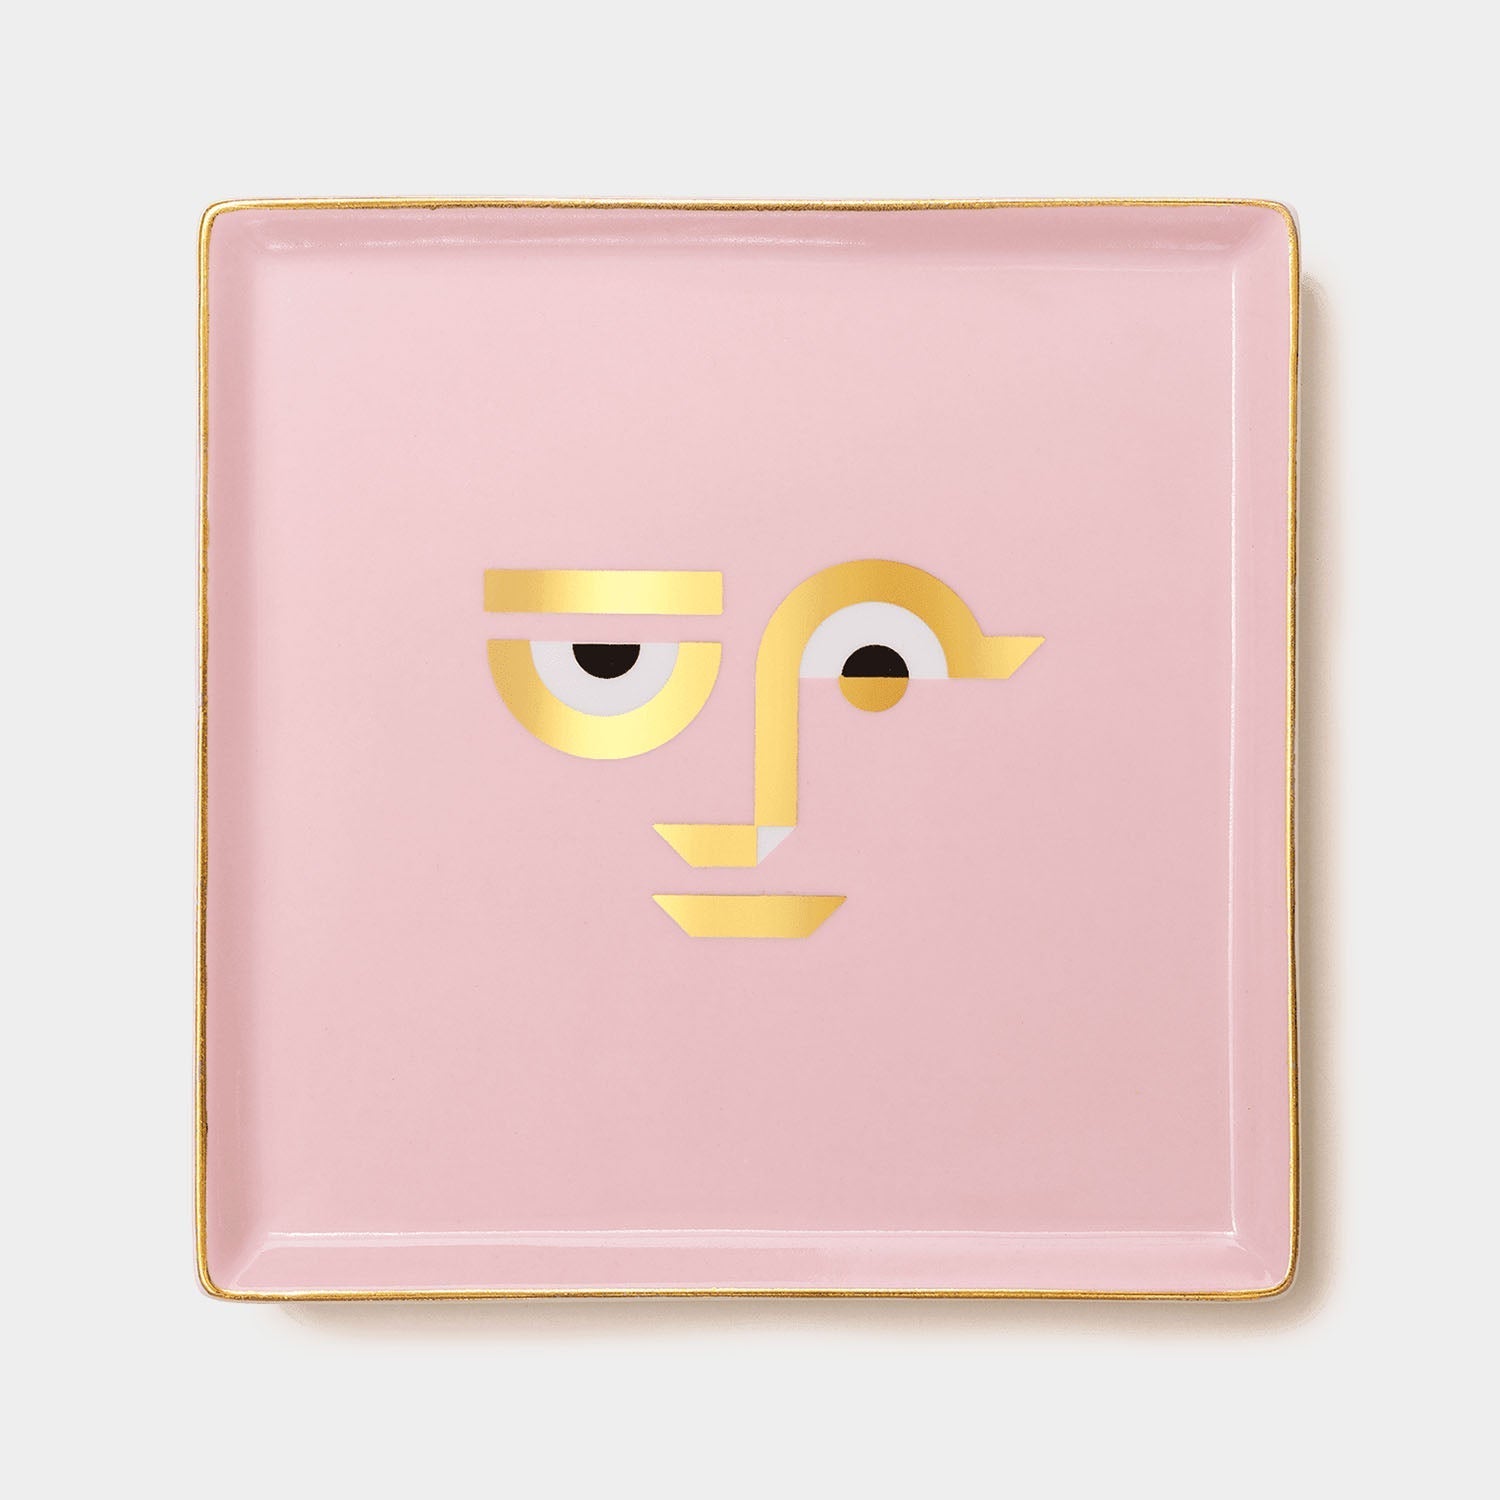 Ceramic Tray Apollo in pink by OCTAEVO